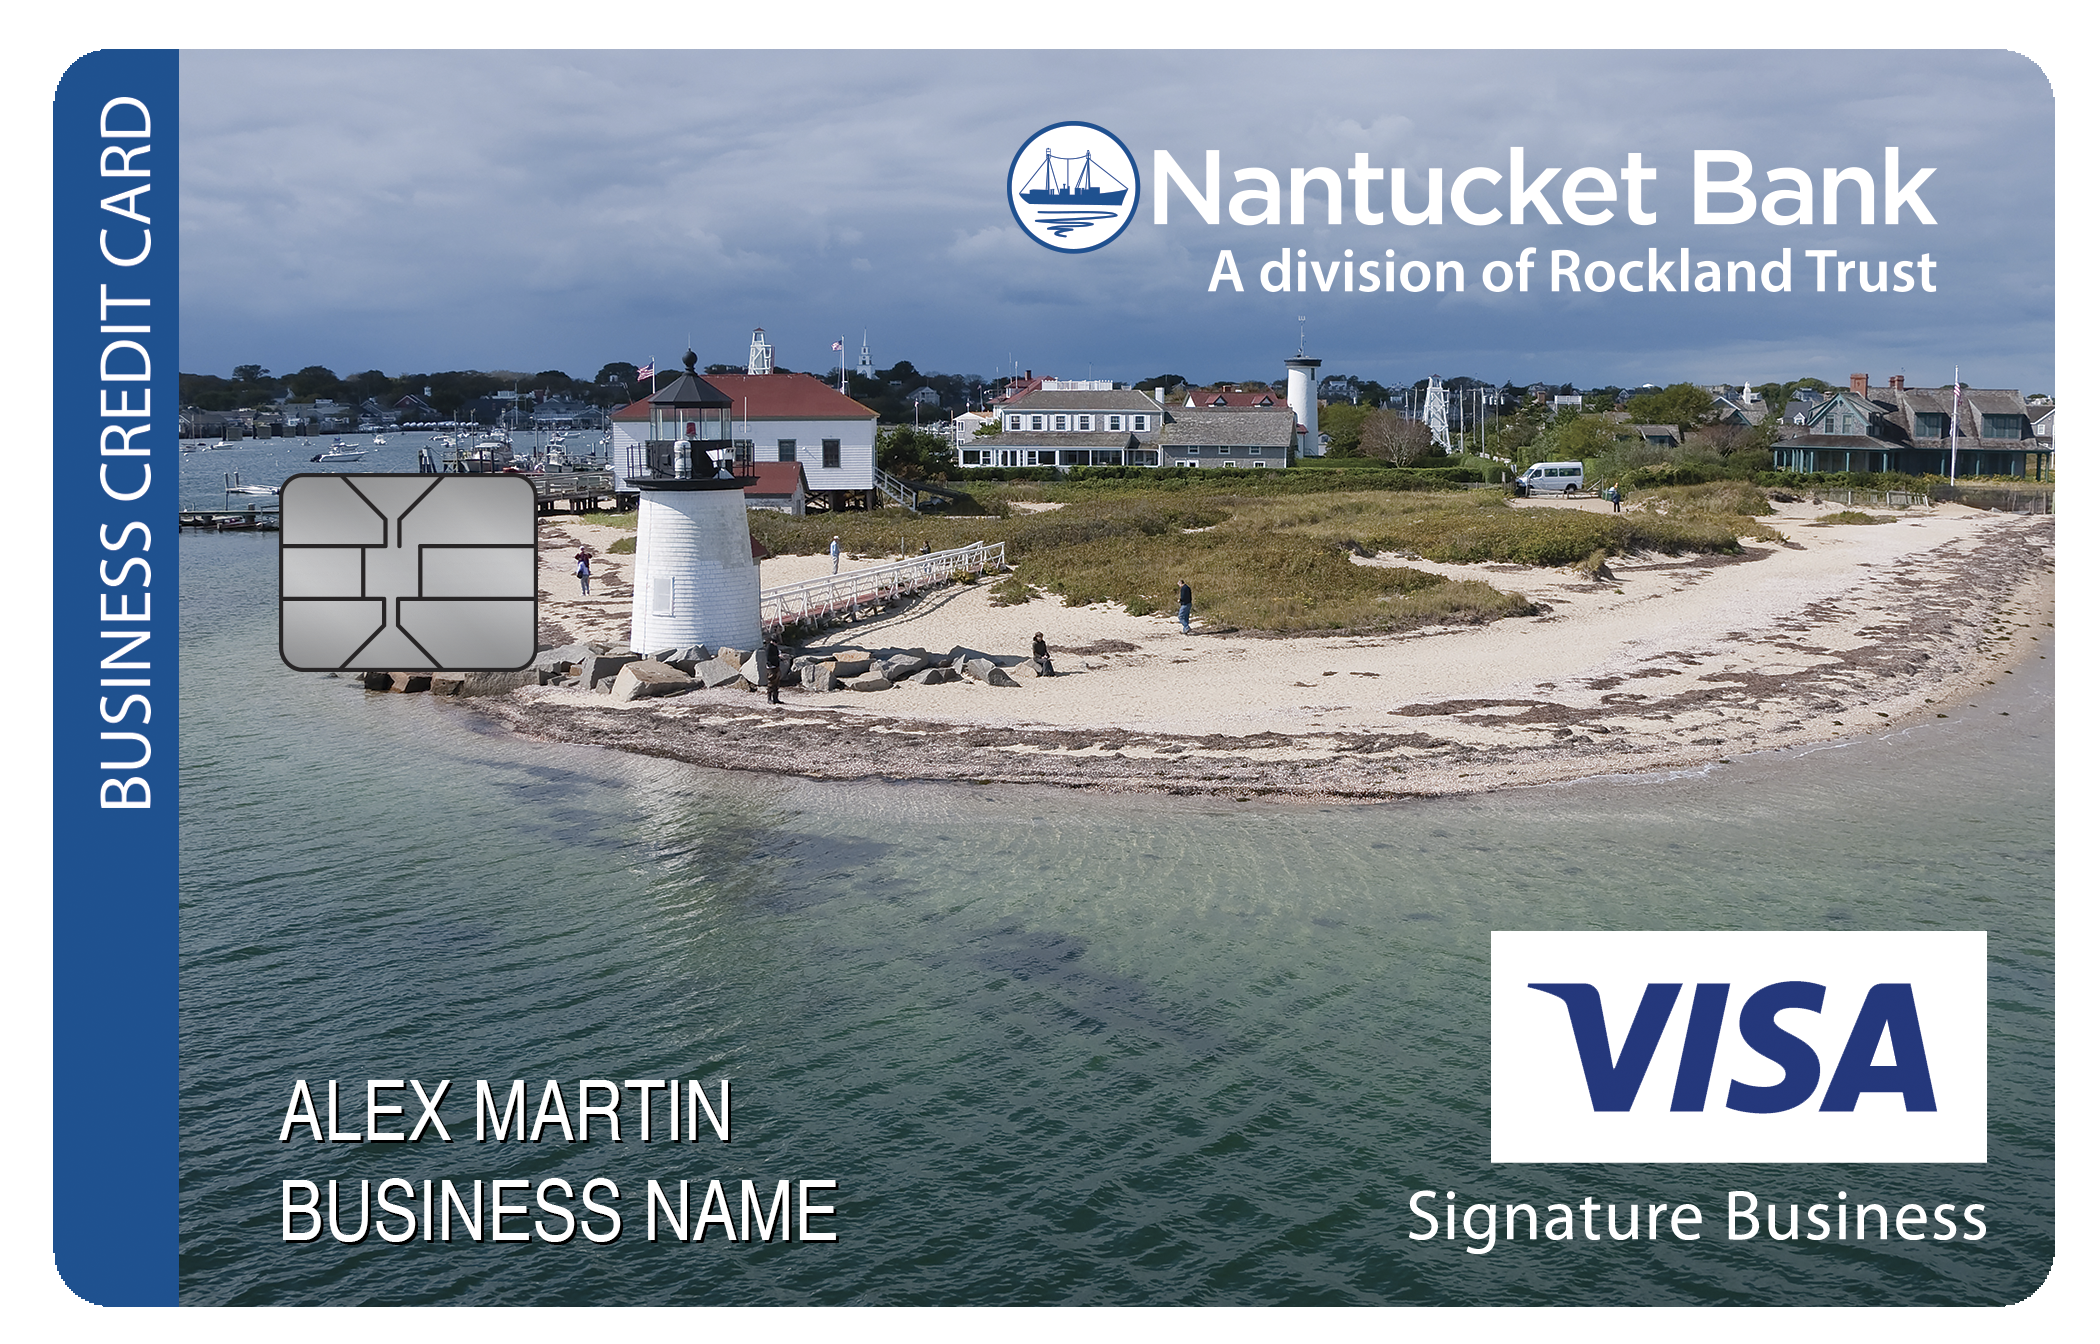 Nantucket Bank